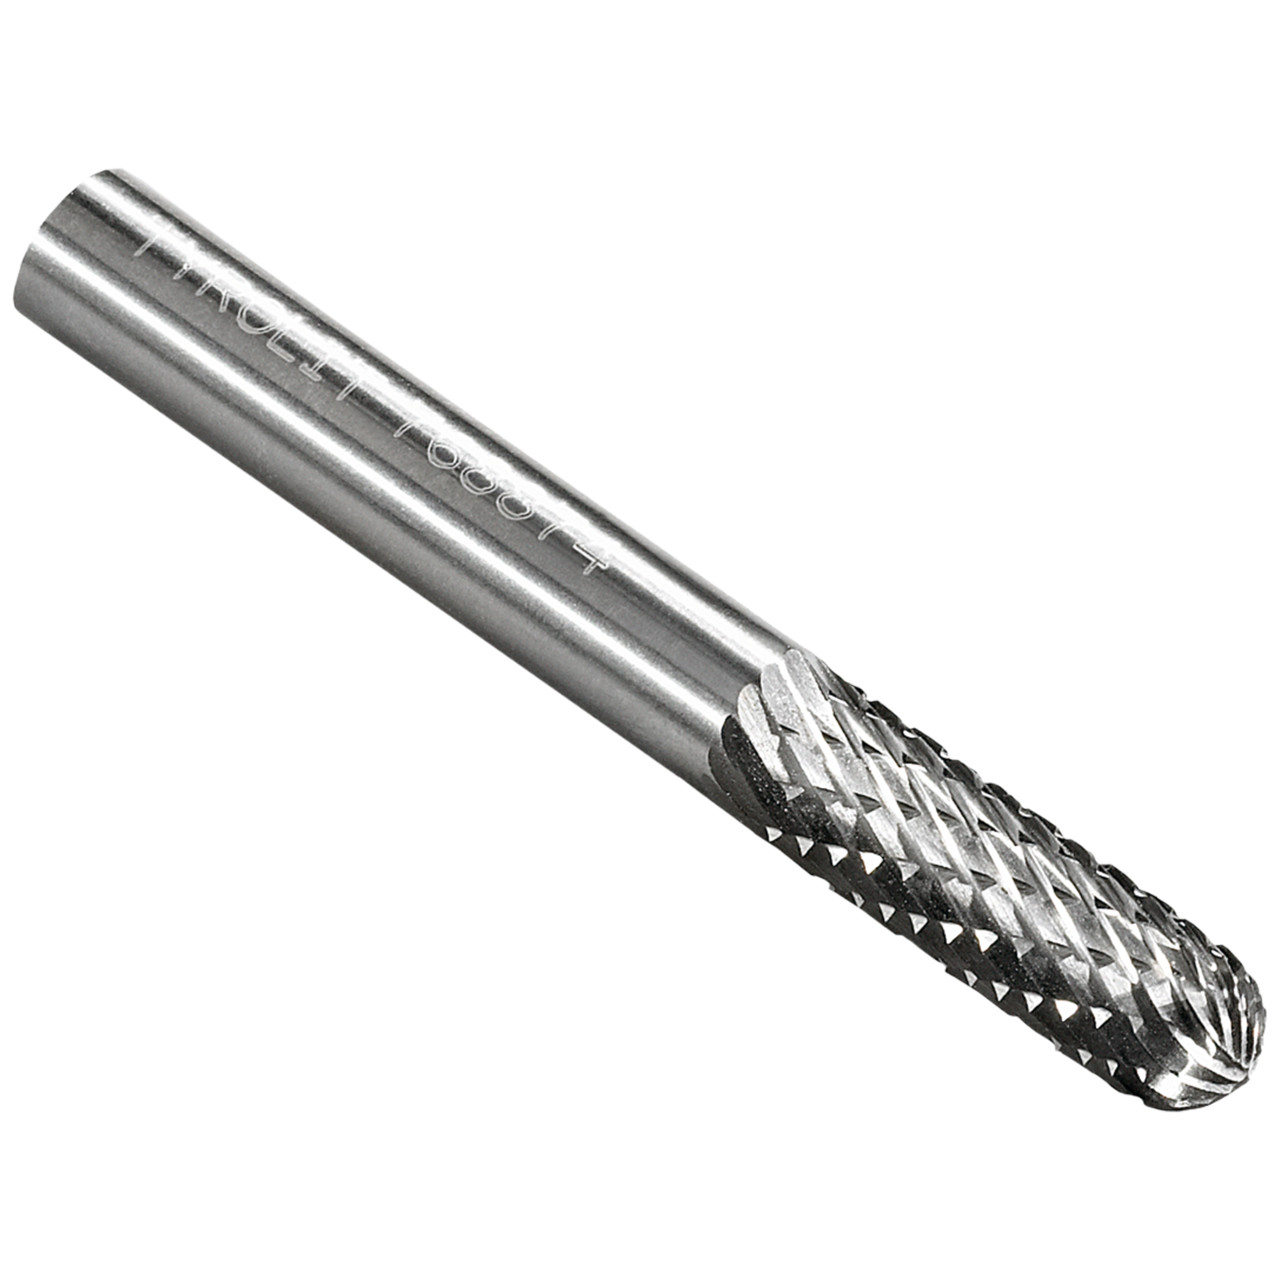 Fresa de metal duro TYROLIT DxT-SxL 3x13-3x38 Para fundición gris, acero y acero inoxidable, forma: 52WRC - cilíndrica, Art. 766126